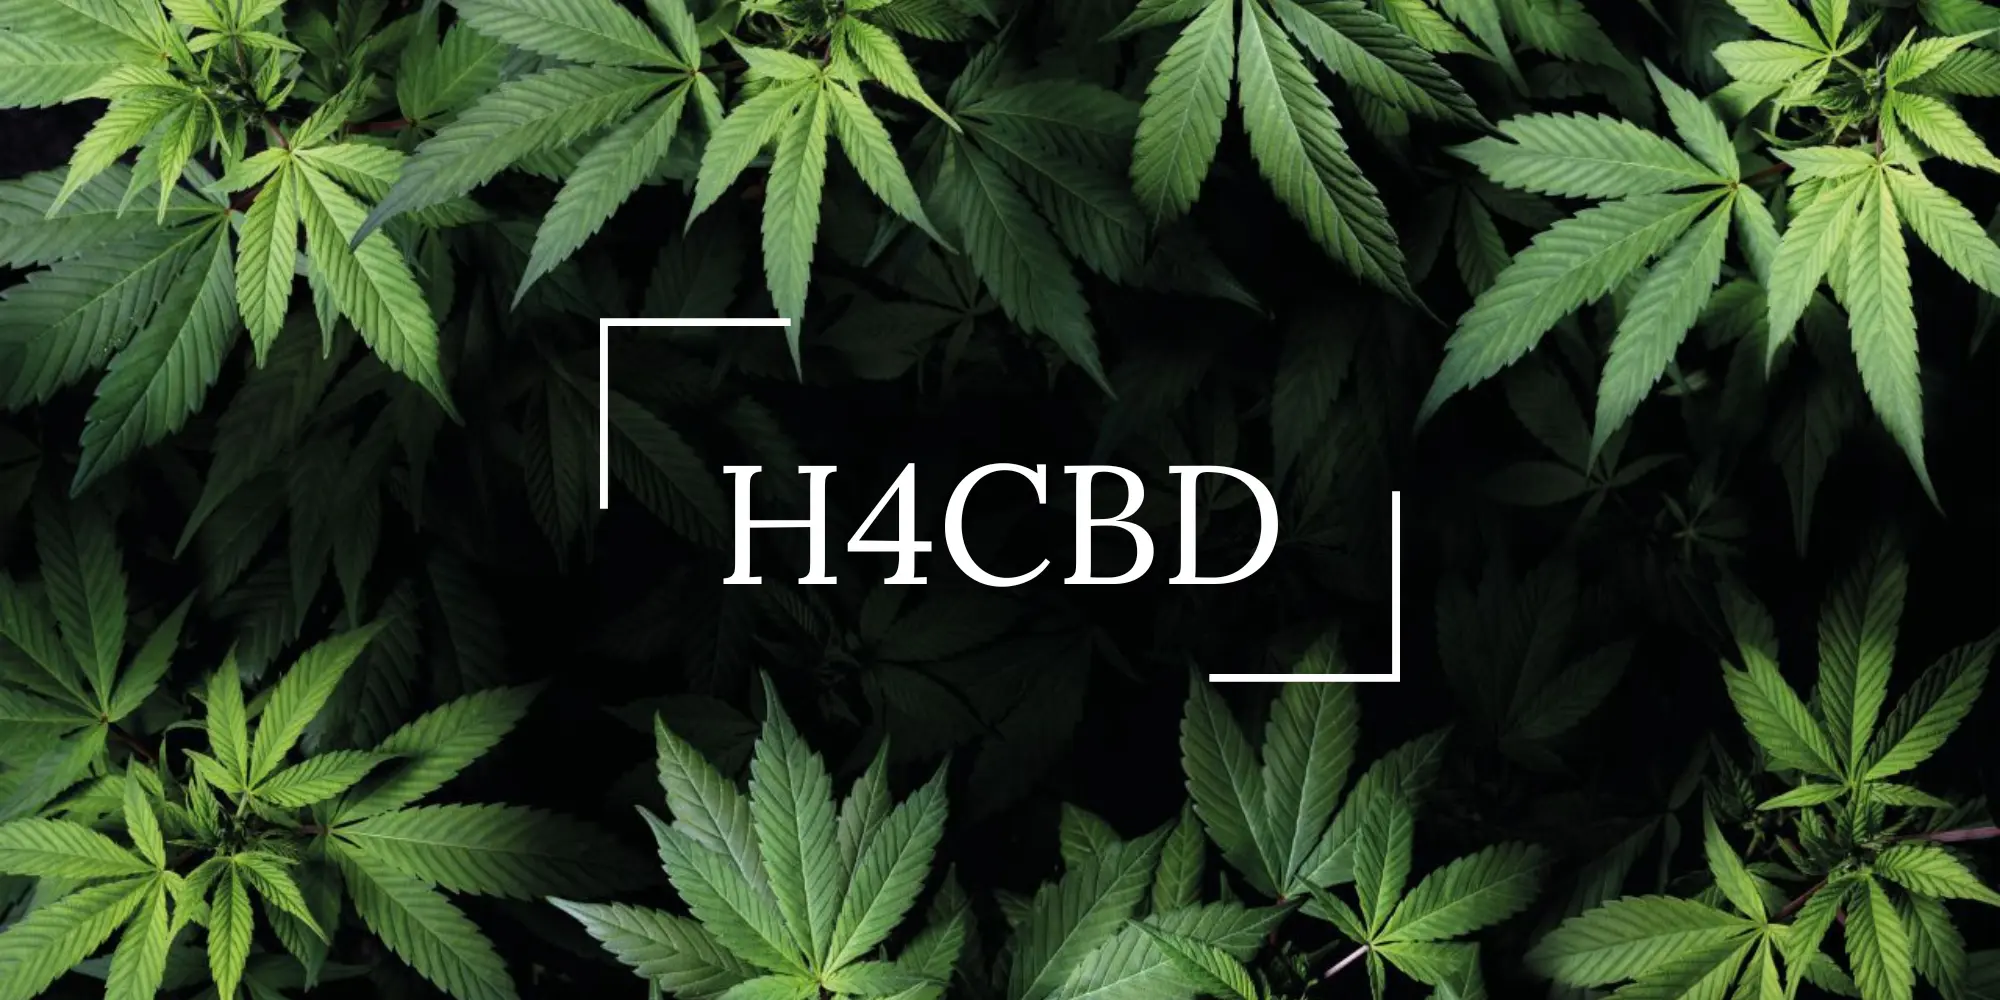 Le nouveau cannabinoïde appelé H4CBD.